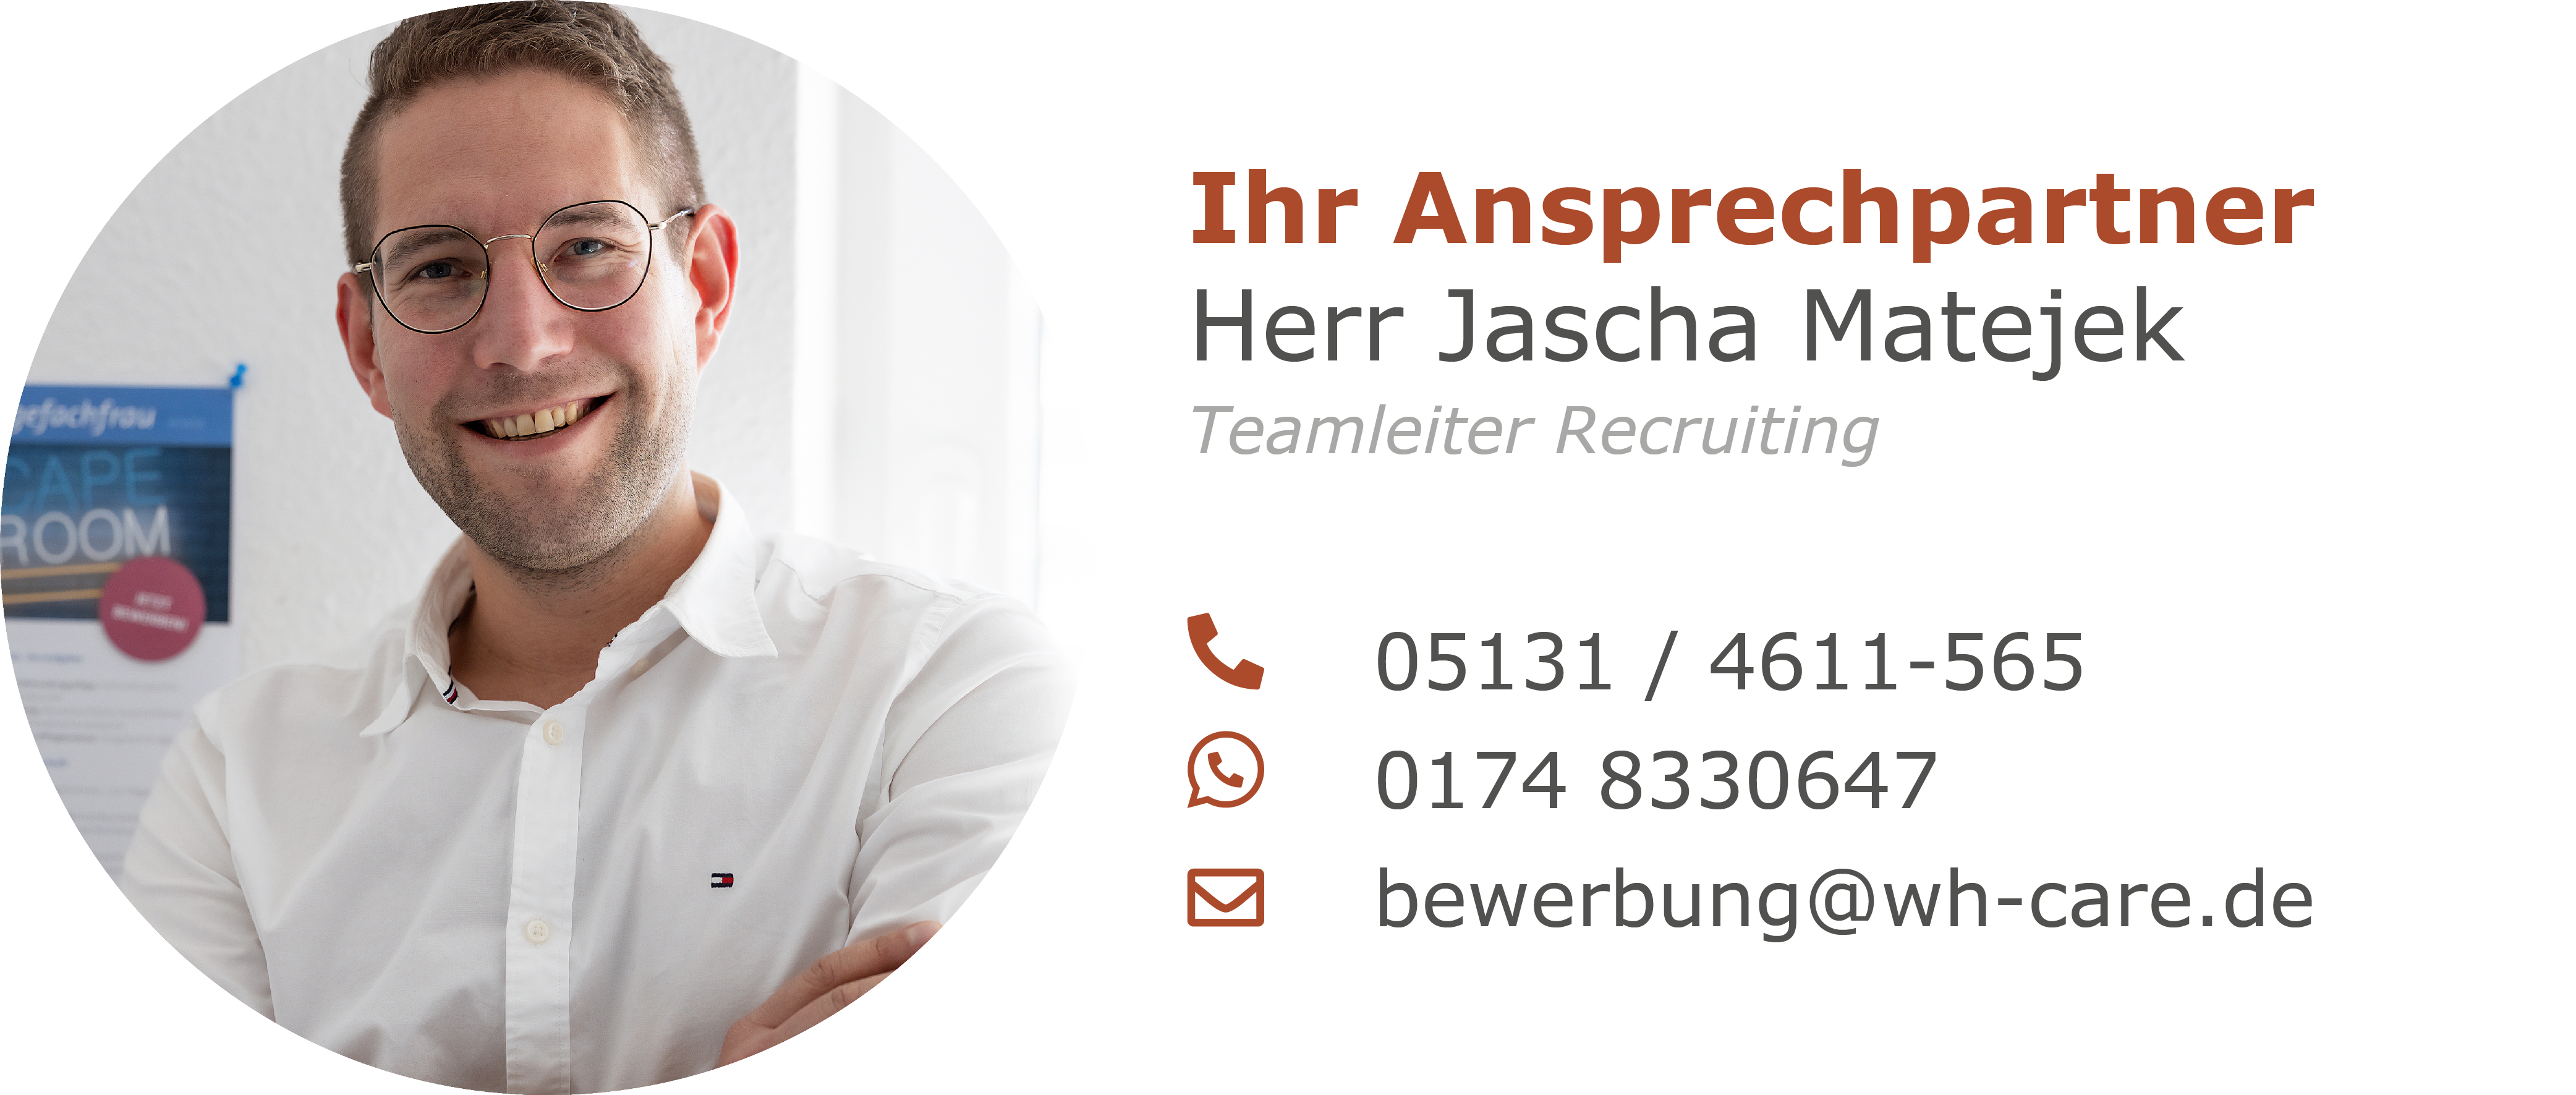 teamleiter_recruiting_matejek_pflegeberufe_pflegefachkraft